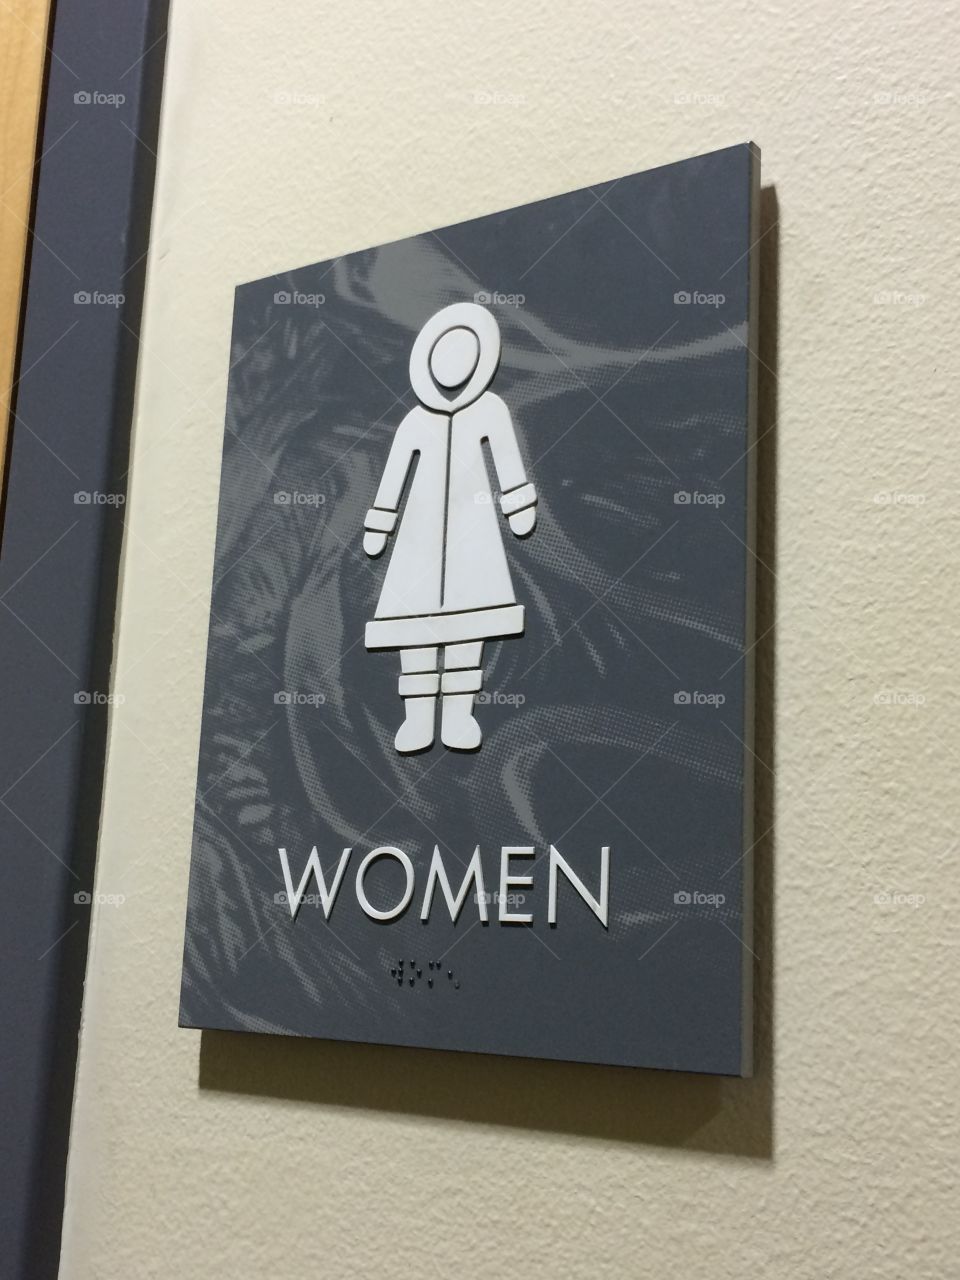 Alaskan Eskimo women’s bathroom sign